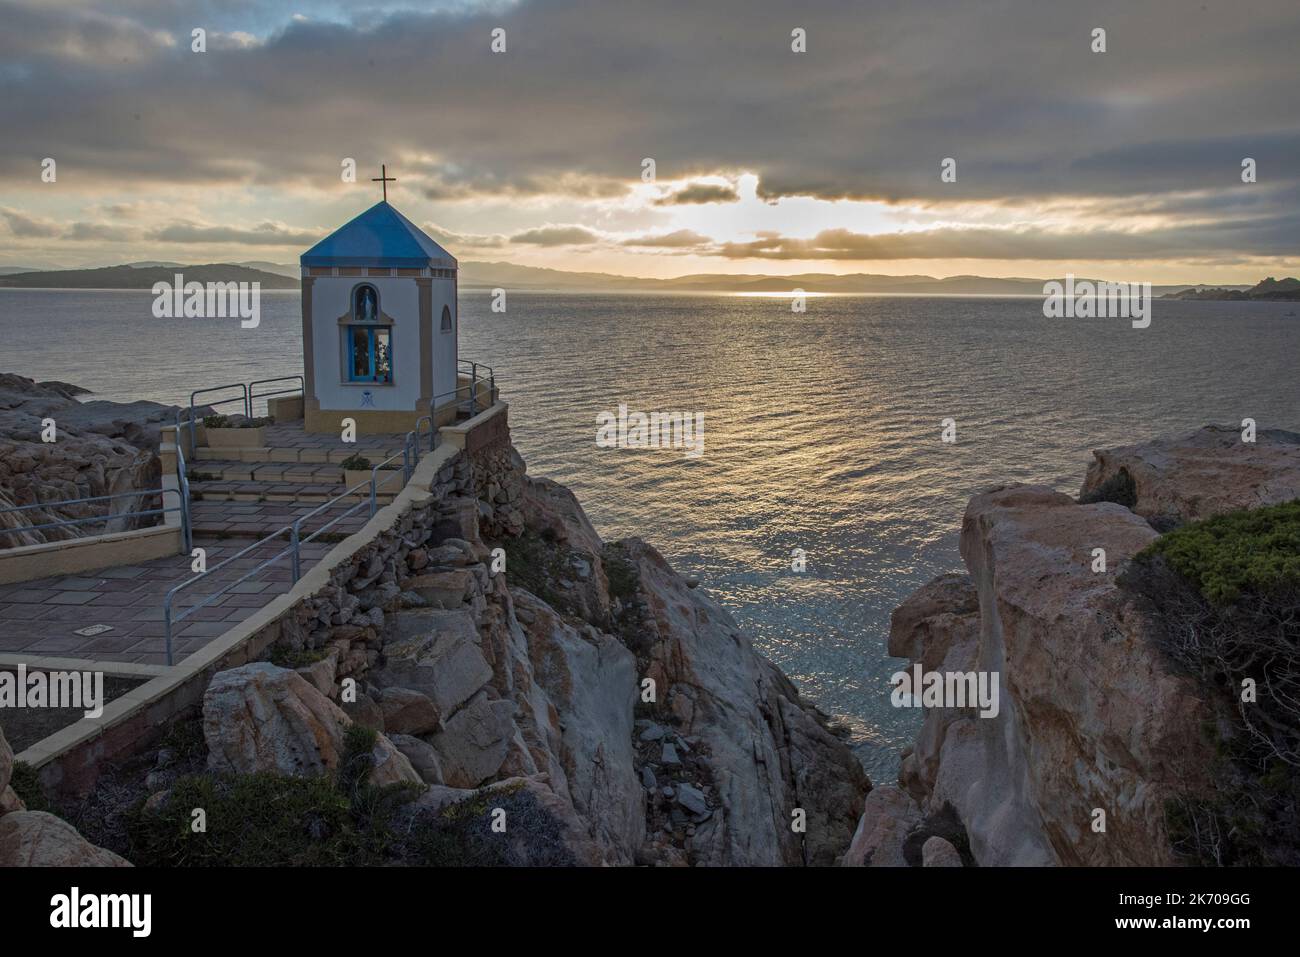 La chiesa sul mare, Sardegna Stock Photo